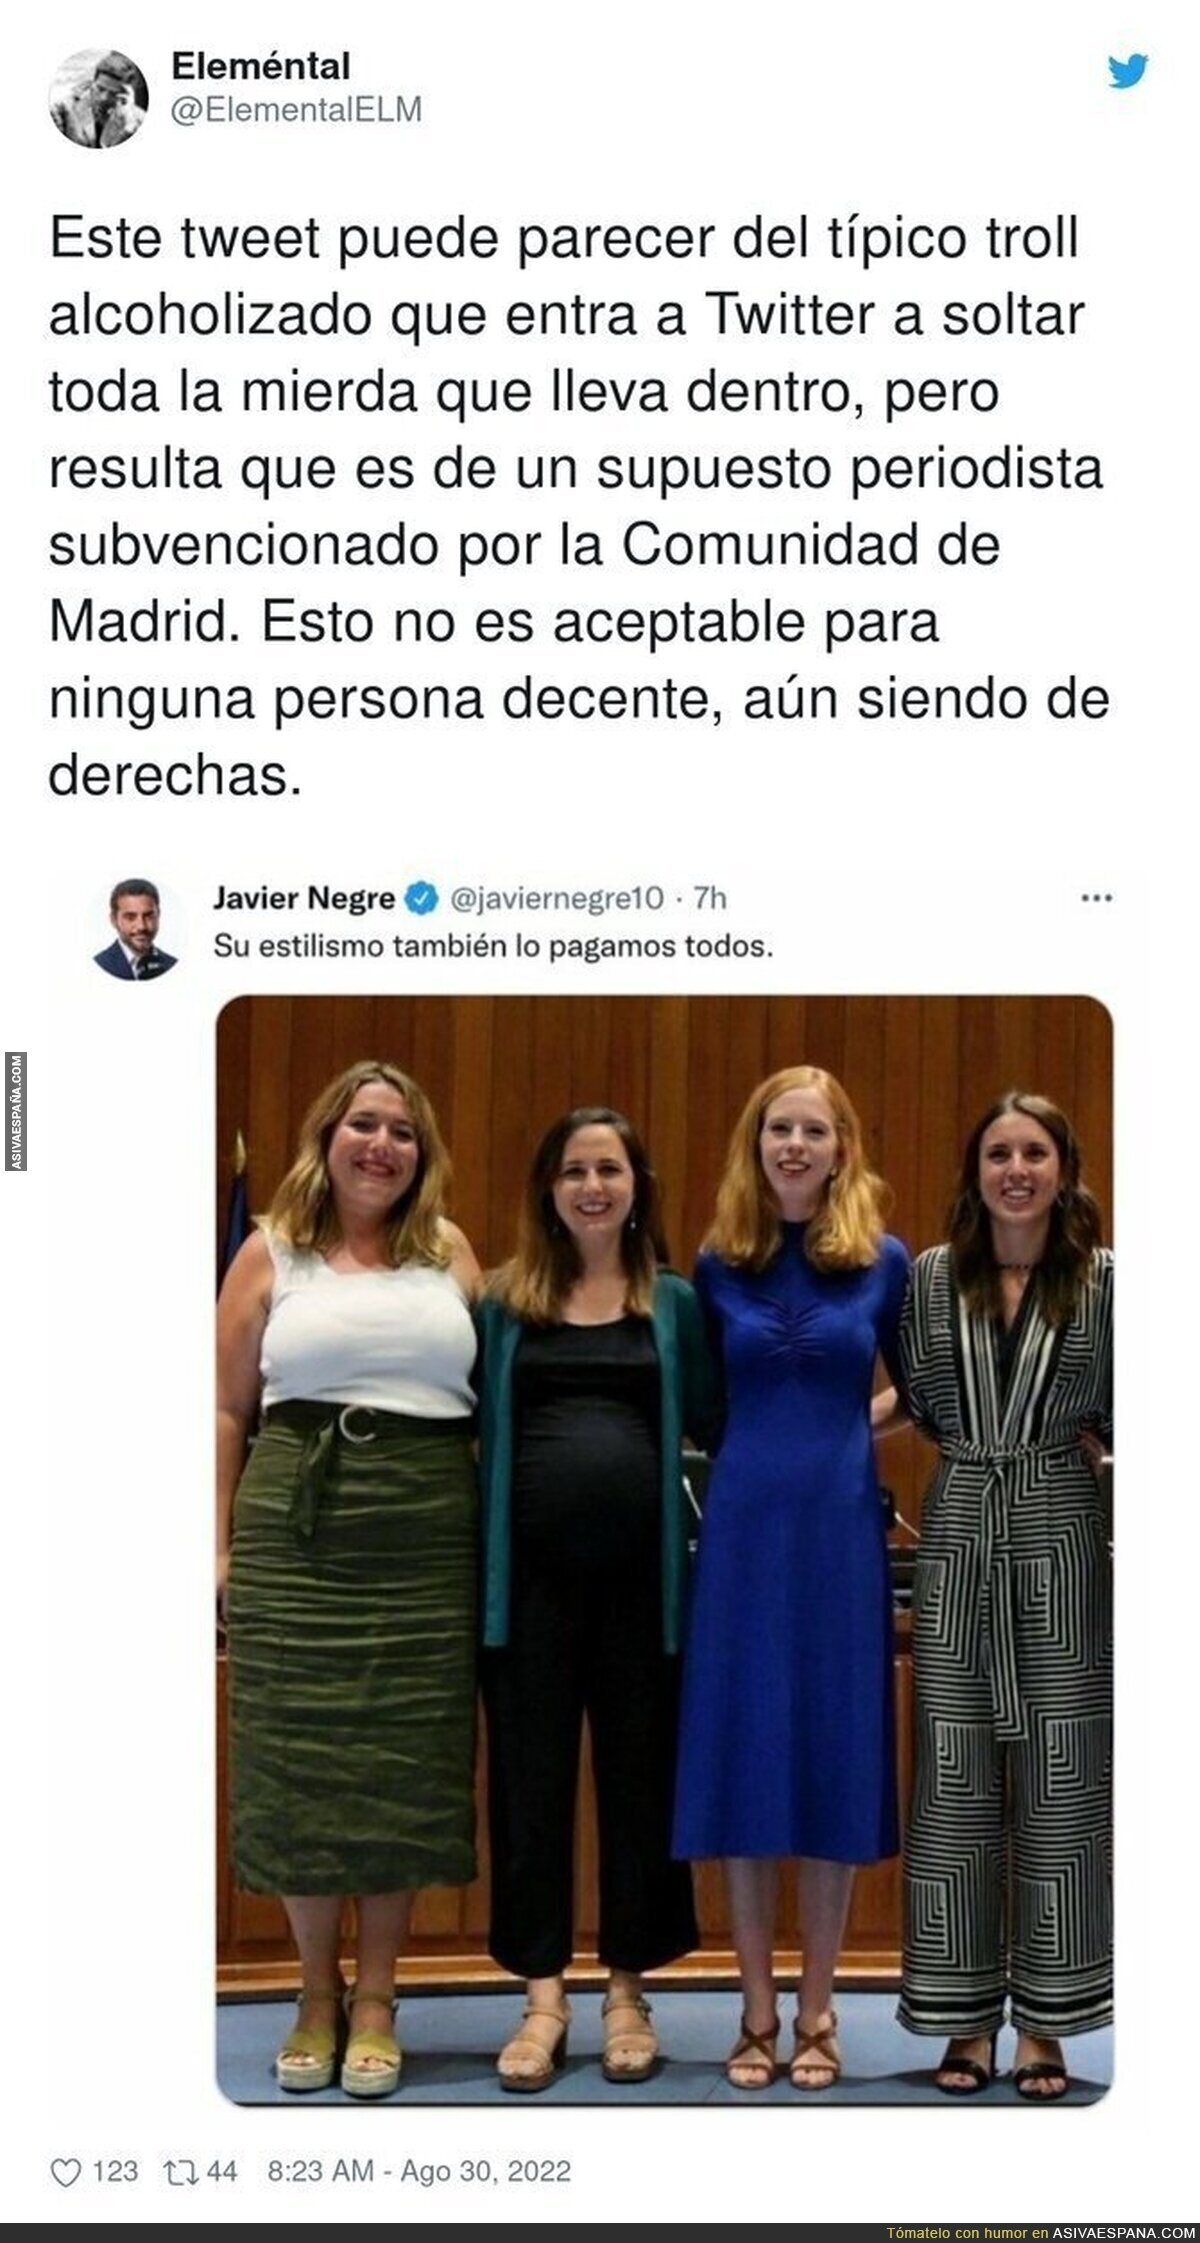 Javier Negre vuelve a hacer el ridículo con este tipo de tuits denigrando a mujeres por como visten